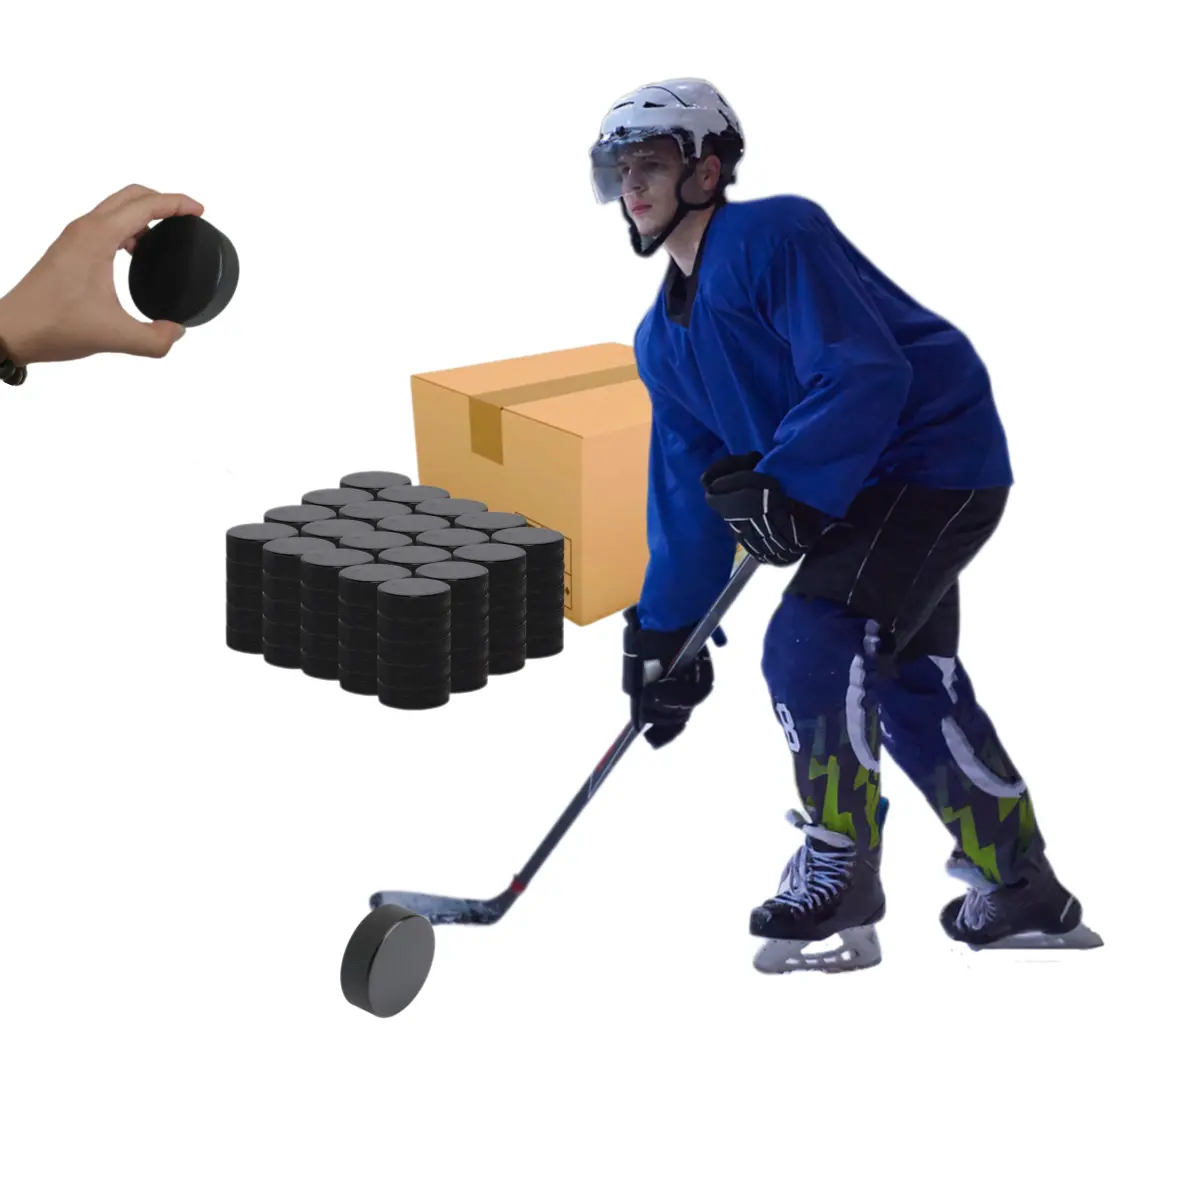 Заводская цена, высококачественные прочные хоккейные мячи с индивидуальным логотипом или пустые резиновые шайбы официального размера